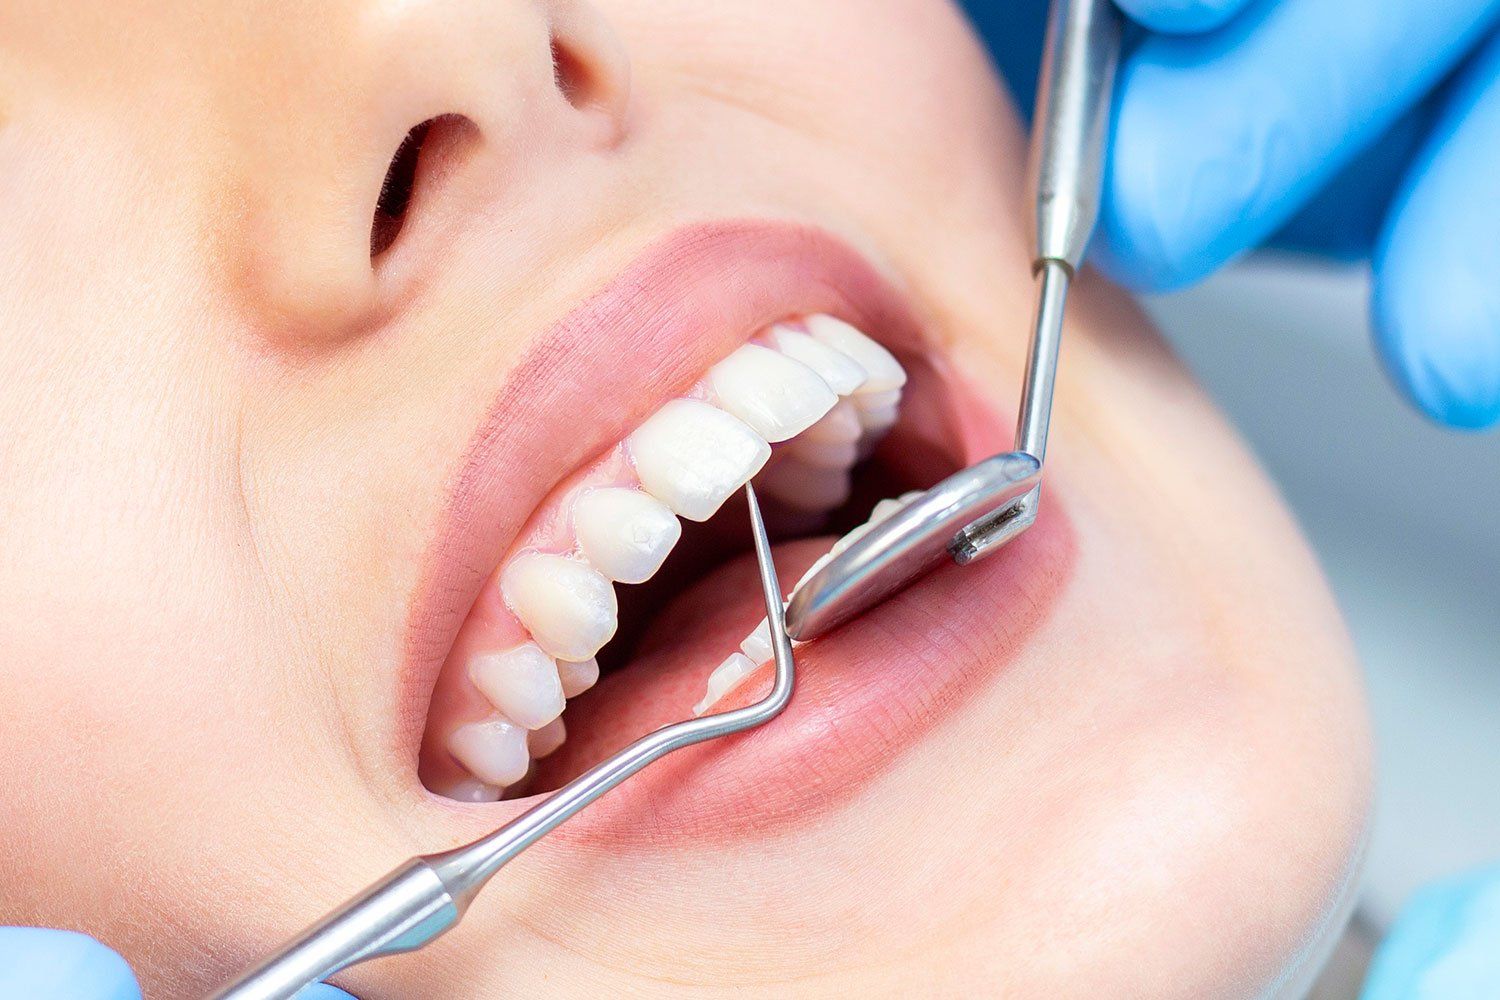 Profilaktinė dantų apžiūra ir gydymas